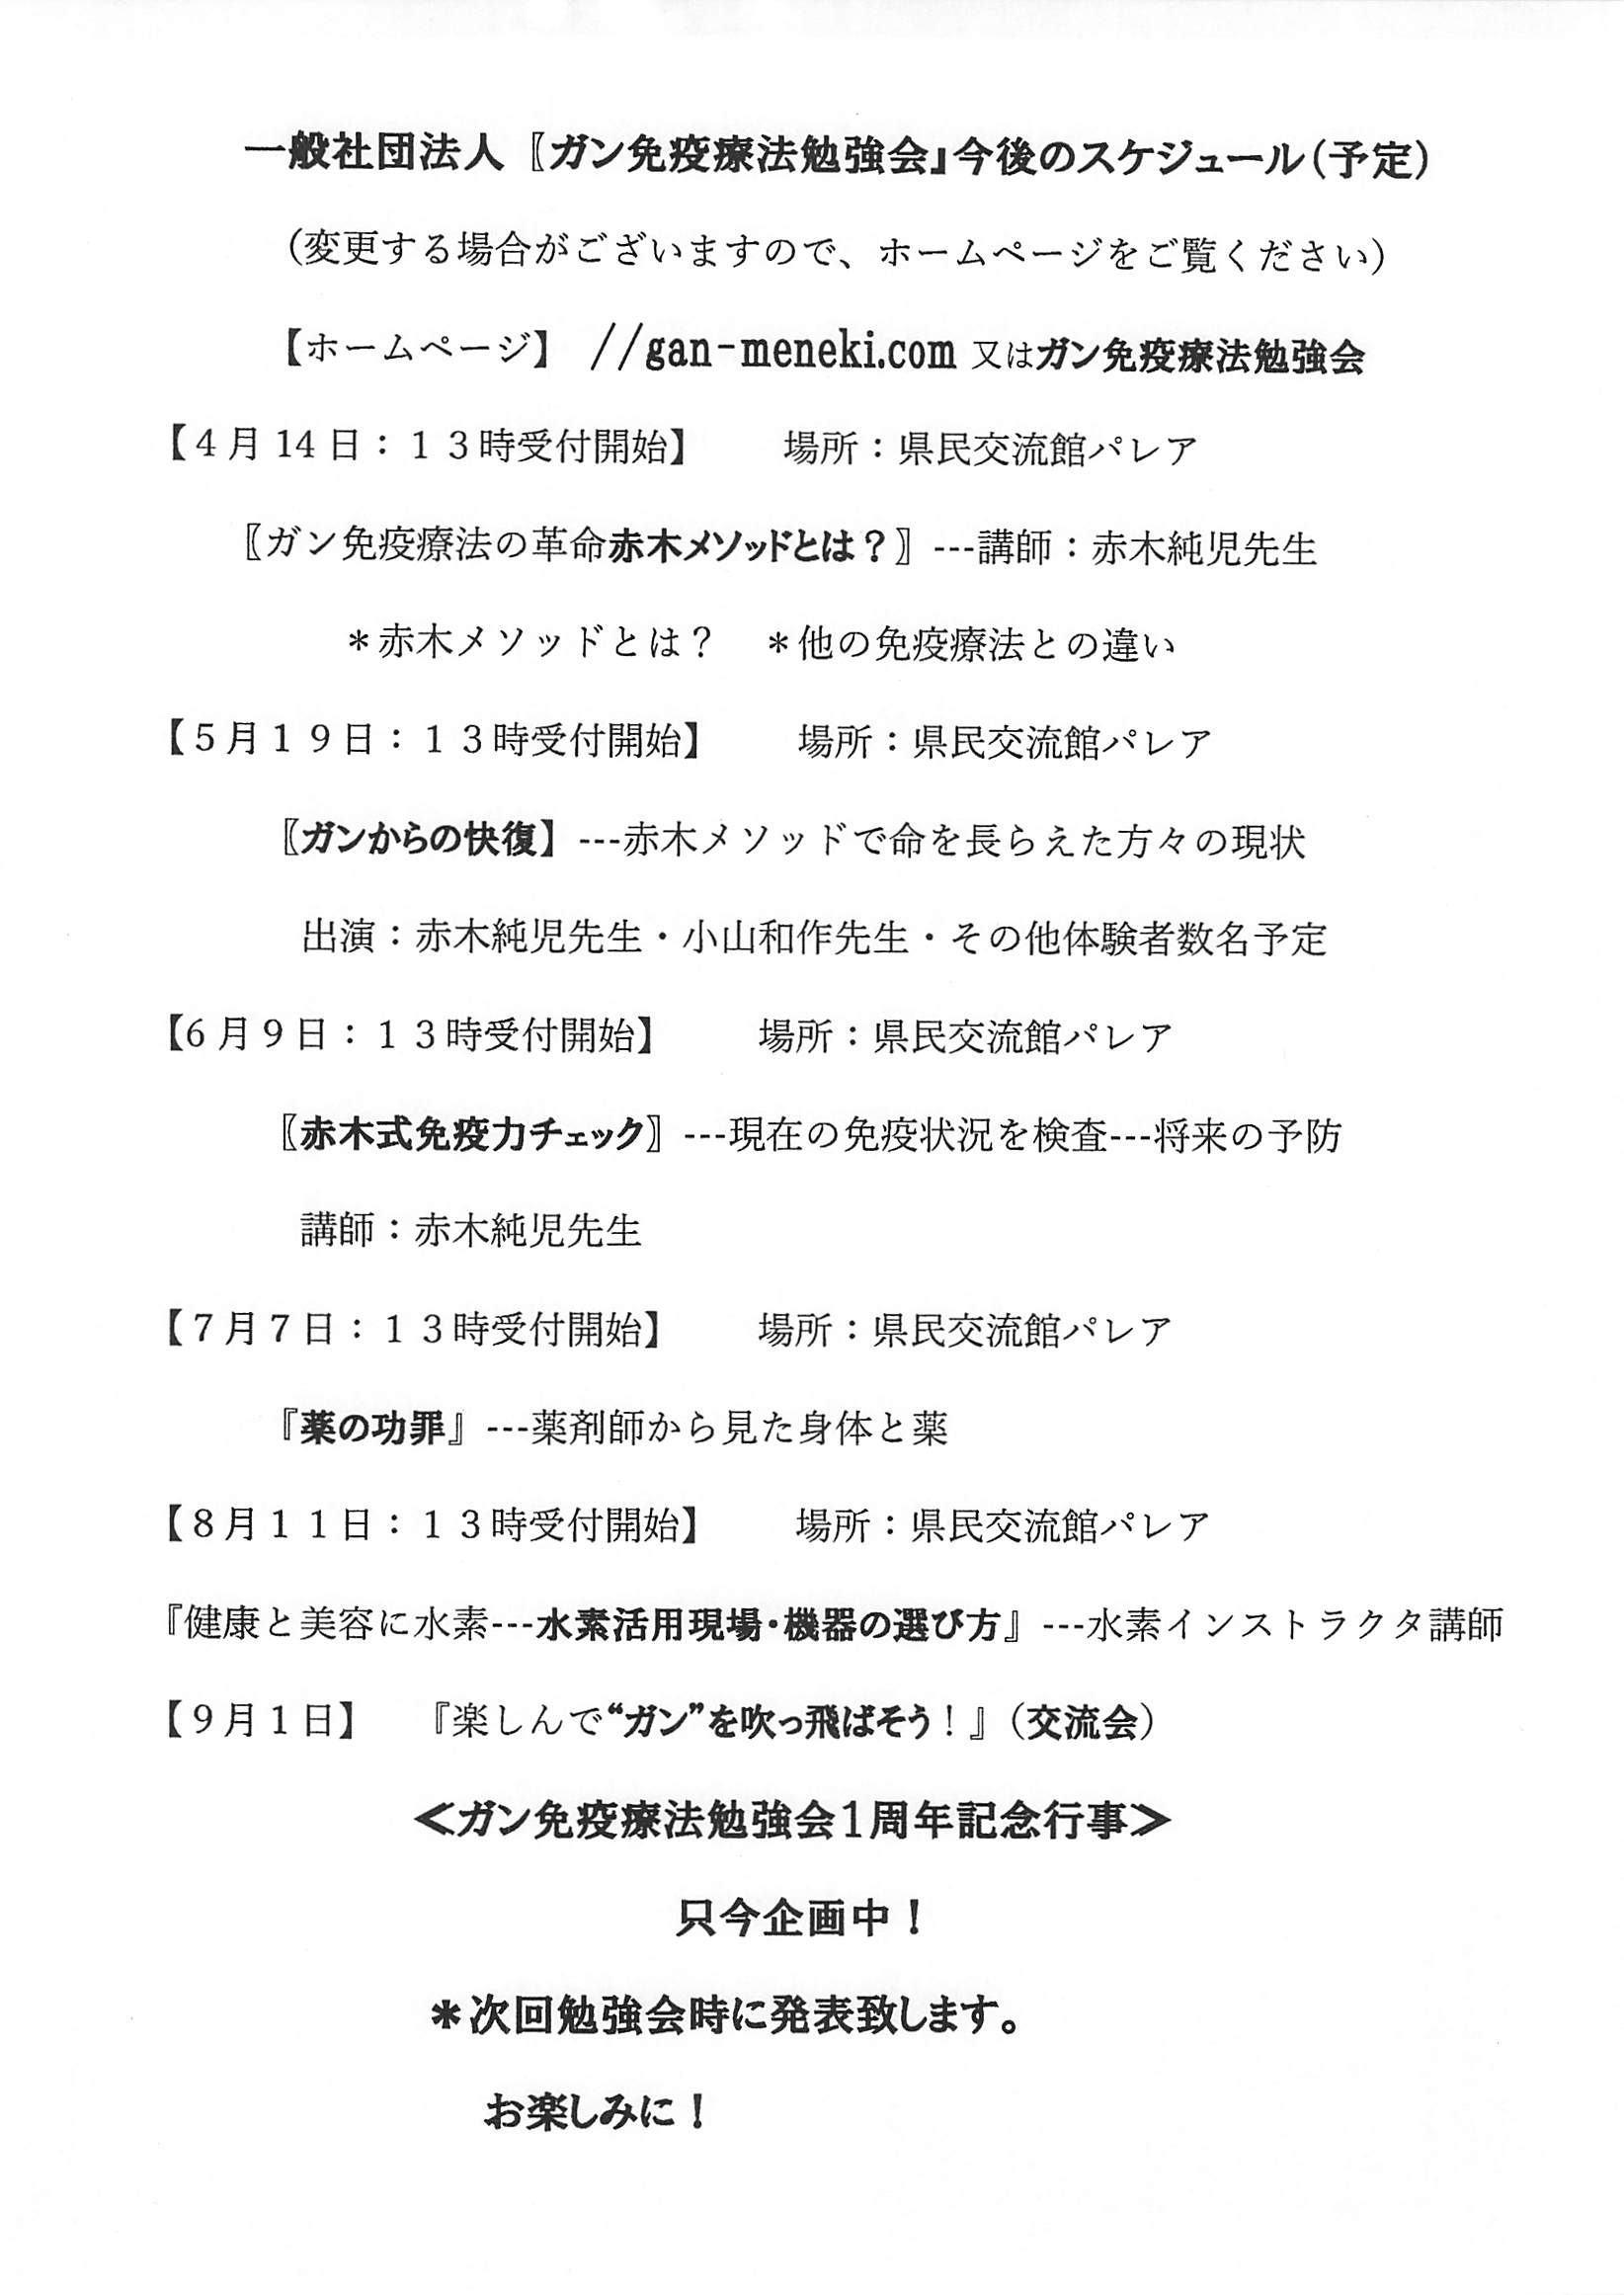 0414_一般社団法人【ガン免疫療法勉強会』今後のスケジュール(予定）